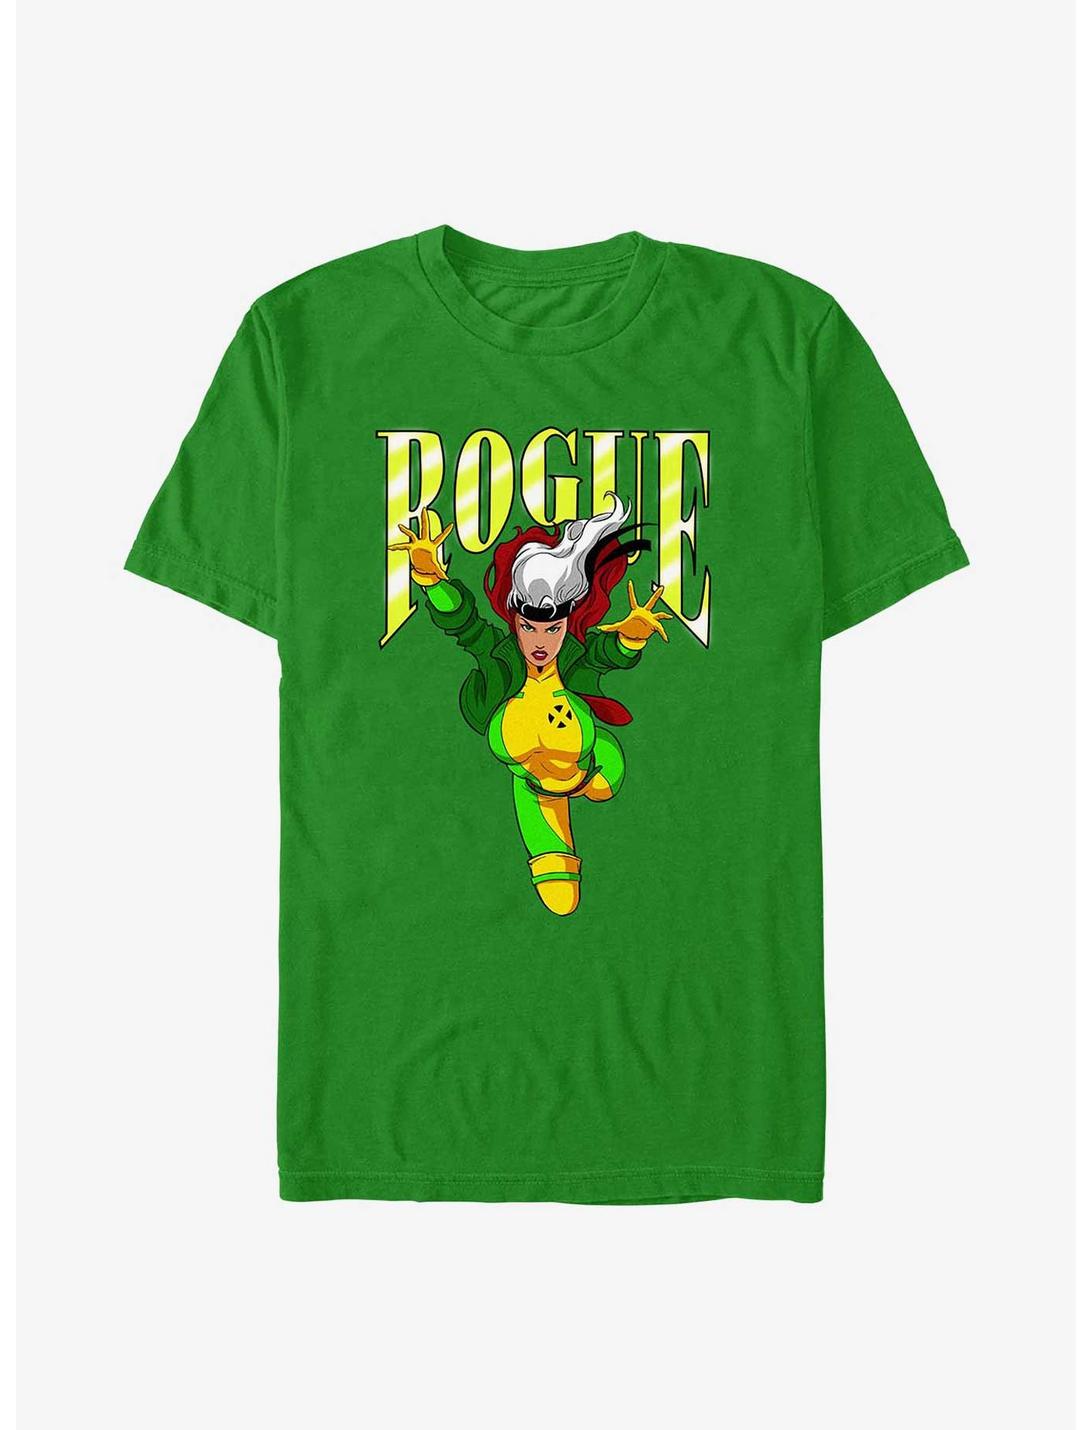 X-Men Rogue T-Shirt, KELLY, hi-res